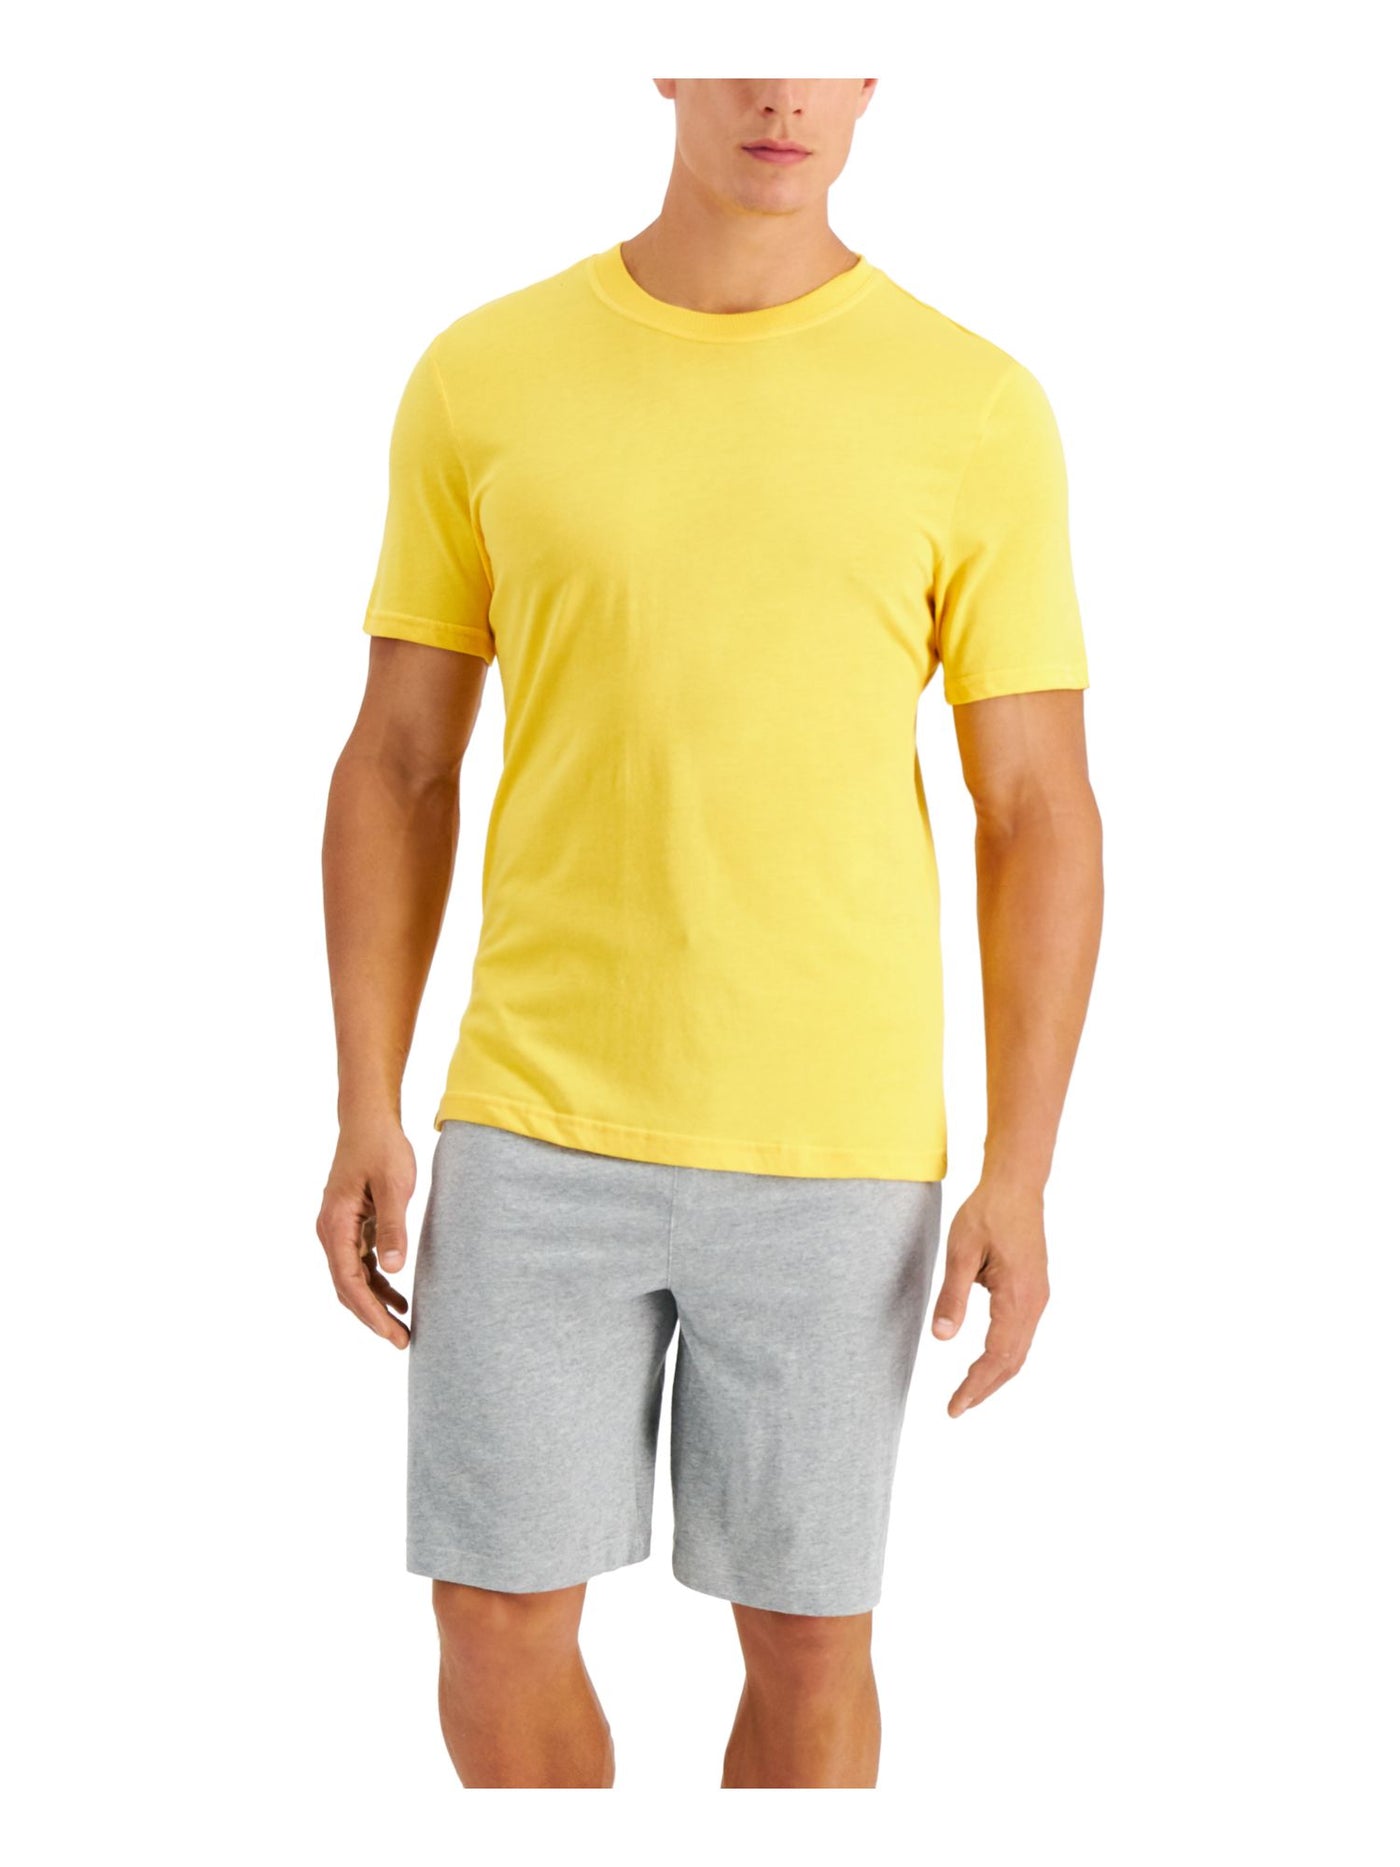 CLUBROOM Mens Yellow Drawstring Short Sleeve T-Shirt Top Shorts Pants Pajamas XL